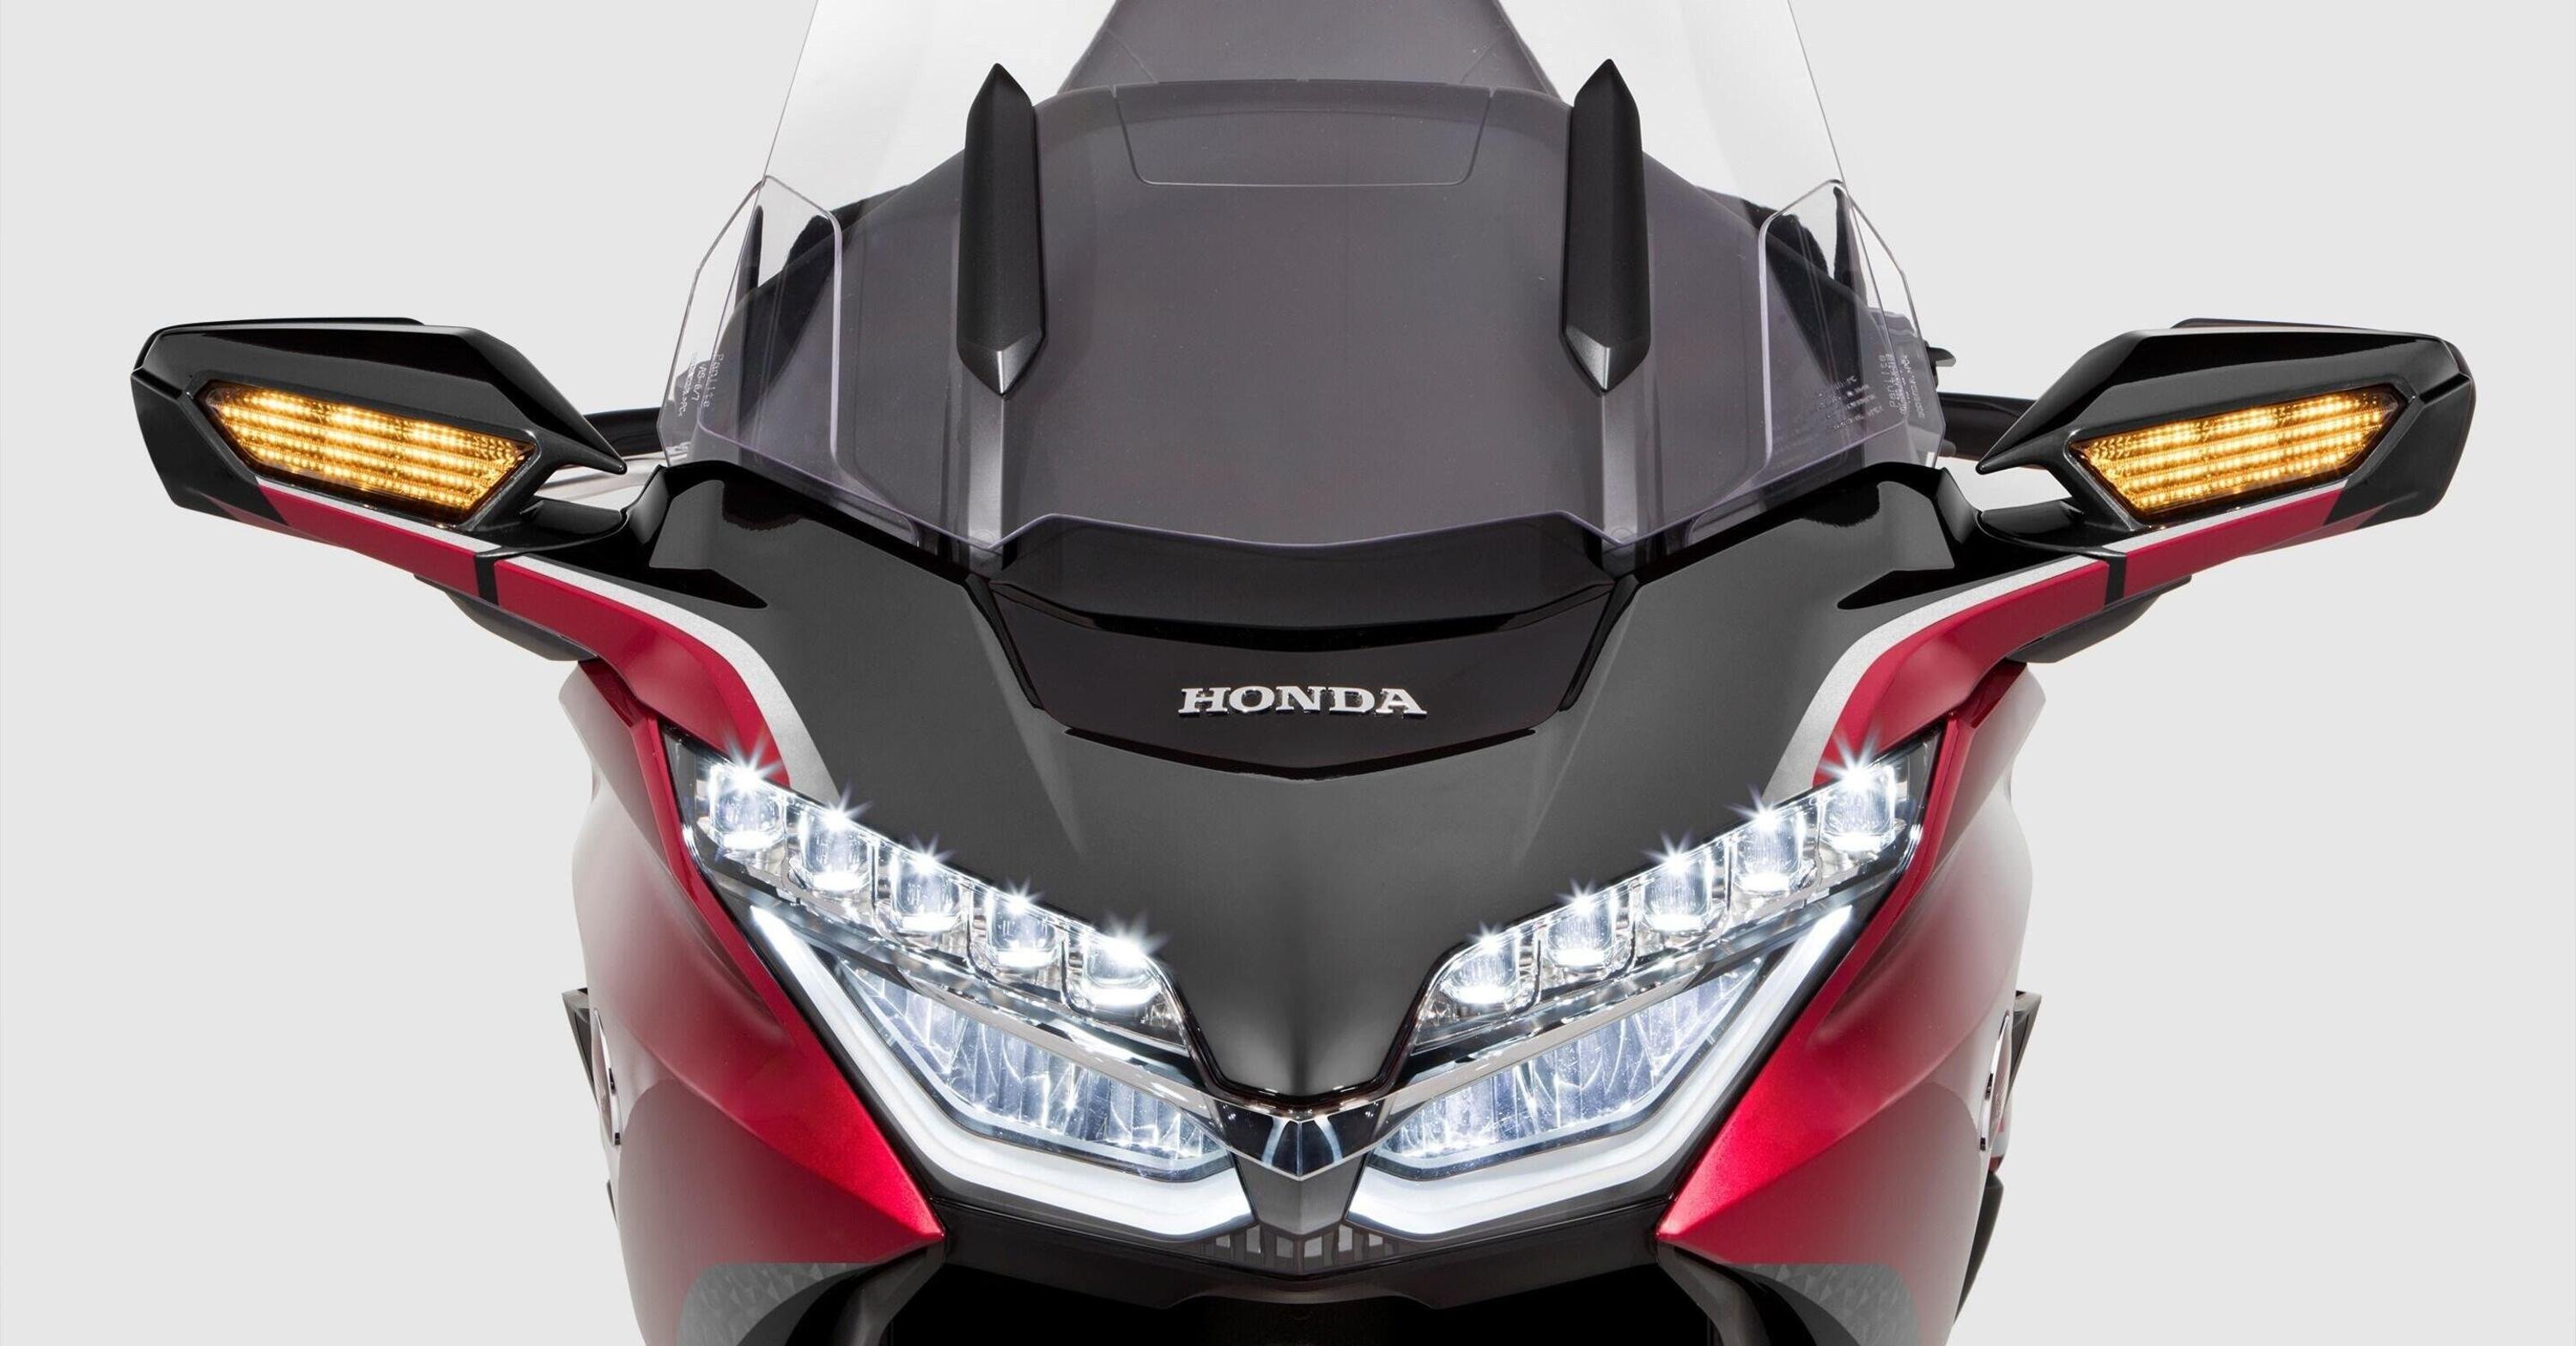 Meno rumore, visione pi&ugrave; sicura: ecco il parabrezza elettronico brevettato da Honda